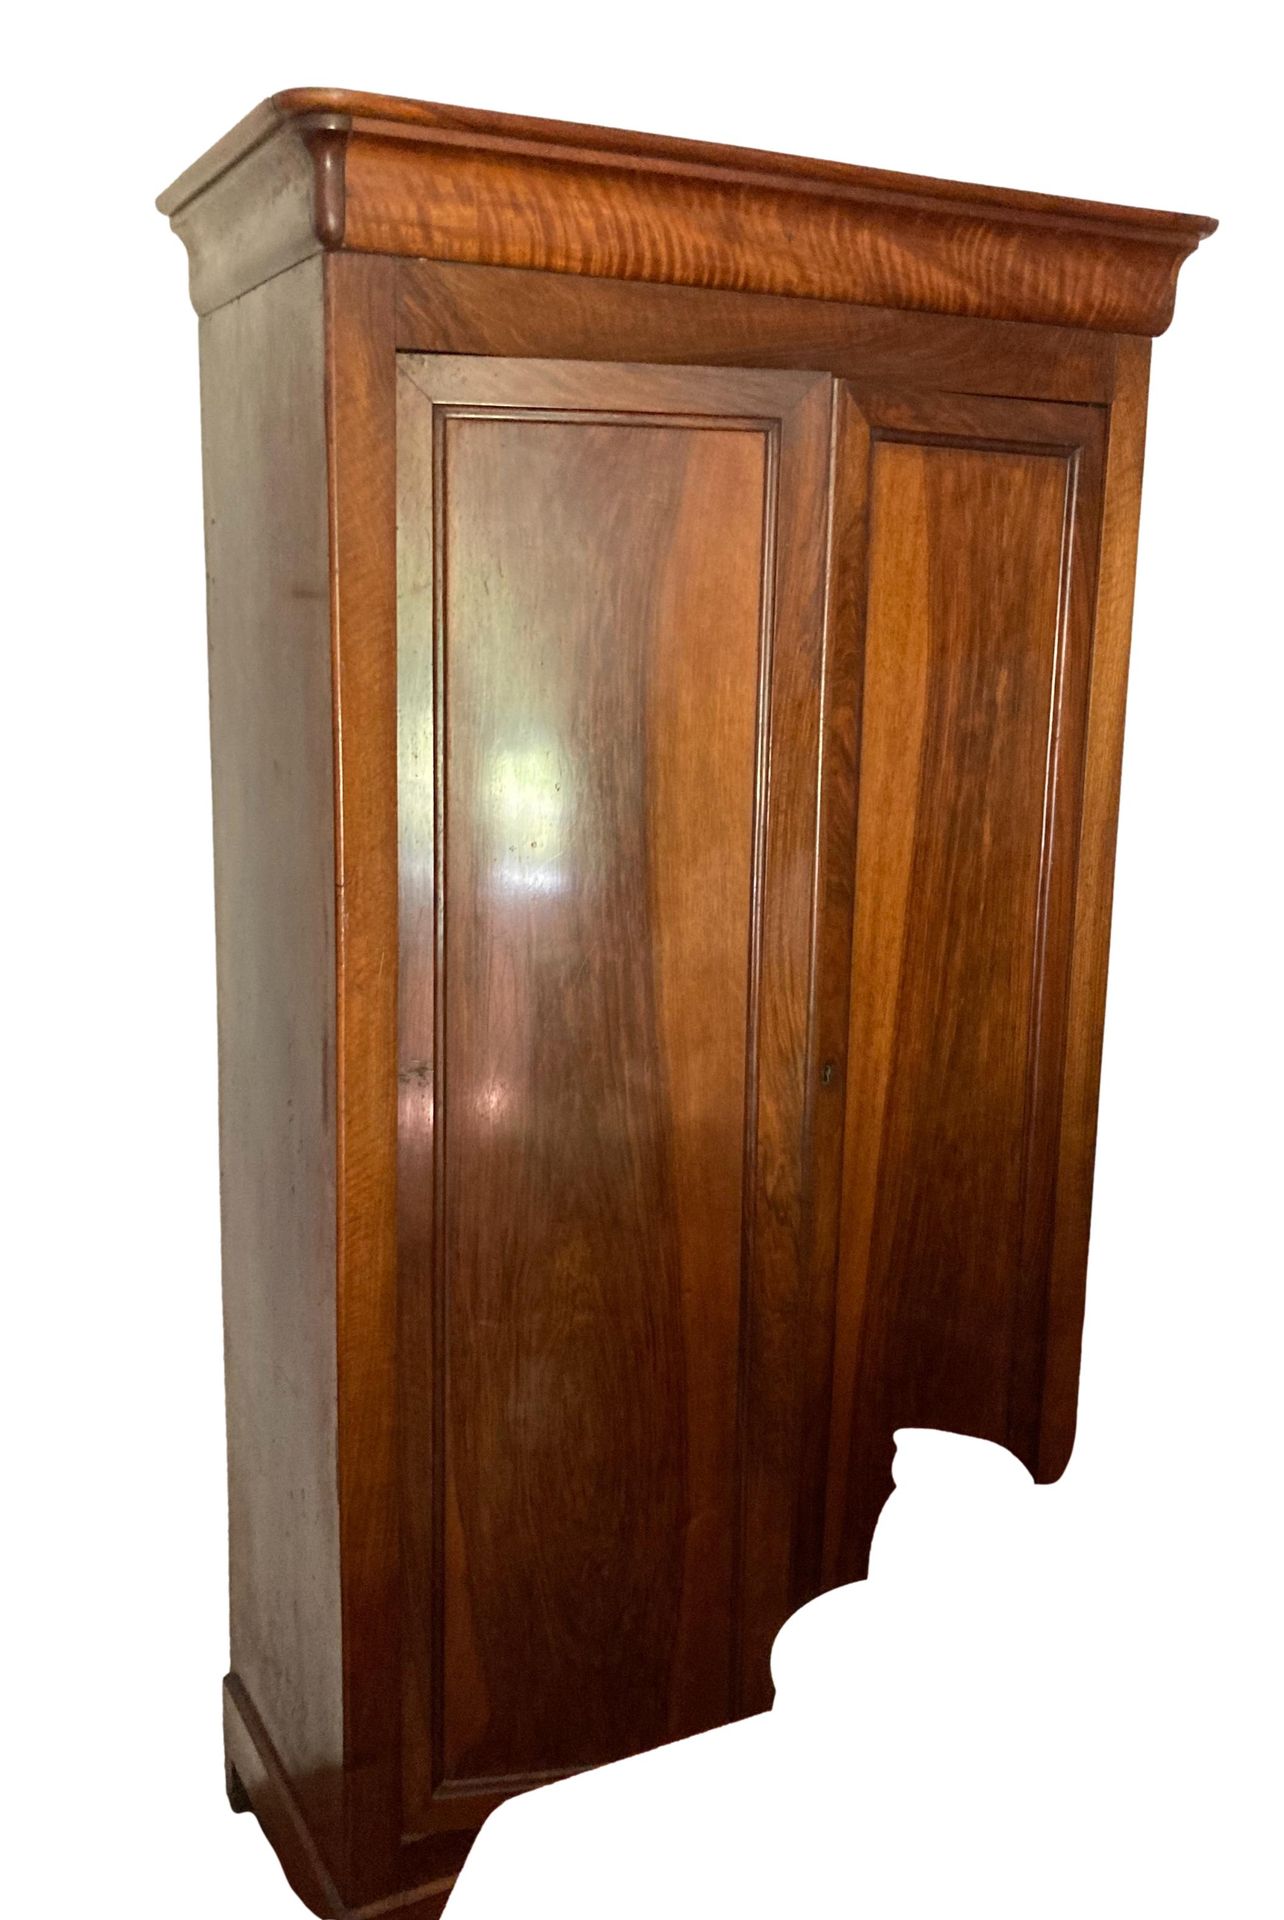 Null 铸模和铜化的木质橱柜开口，有两扇门

路易-菲利普时期

H.205宽104深46厘米